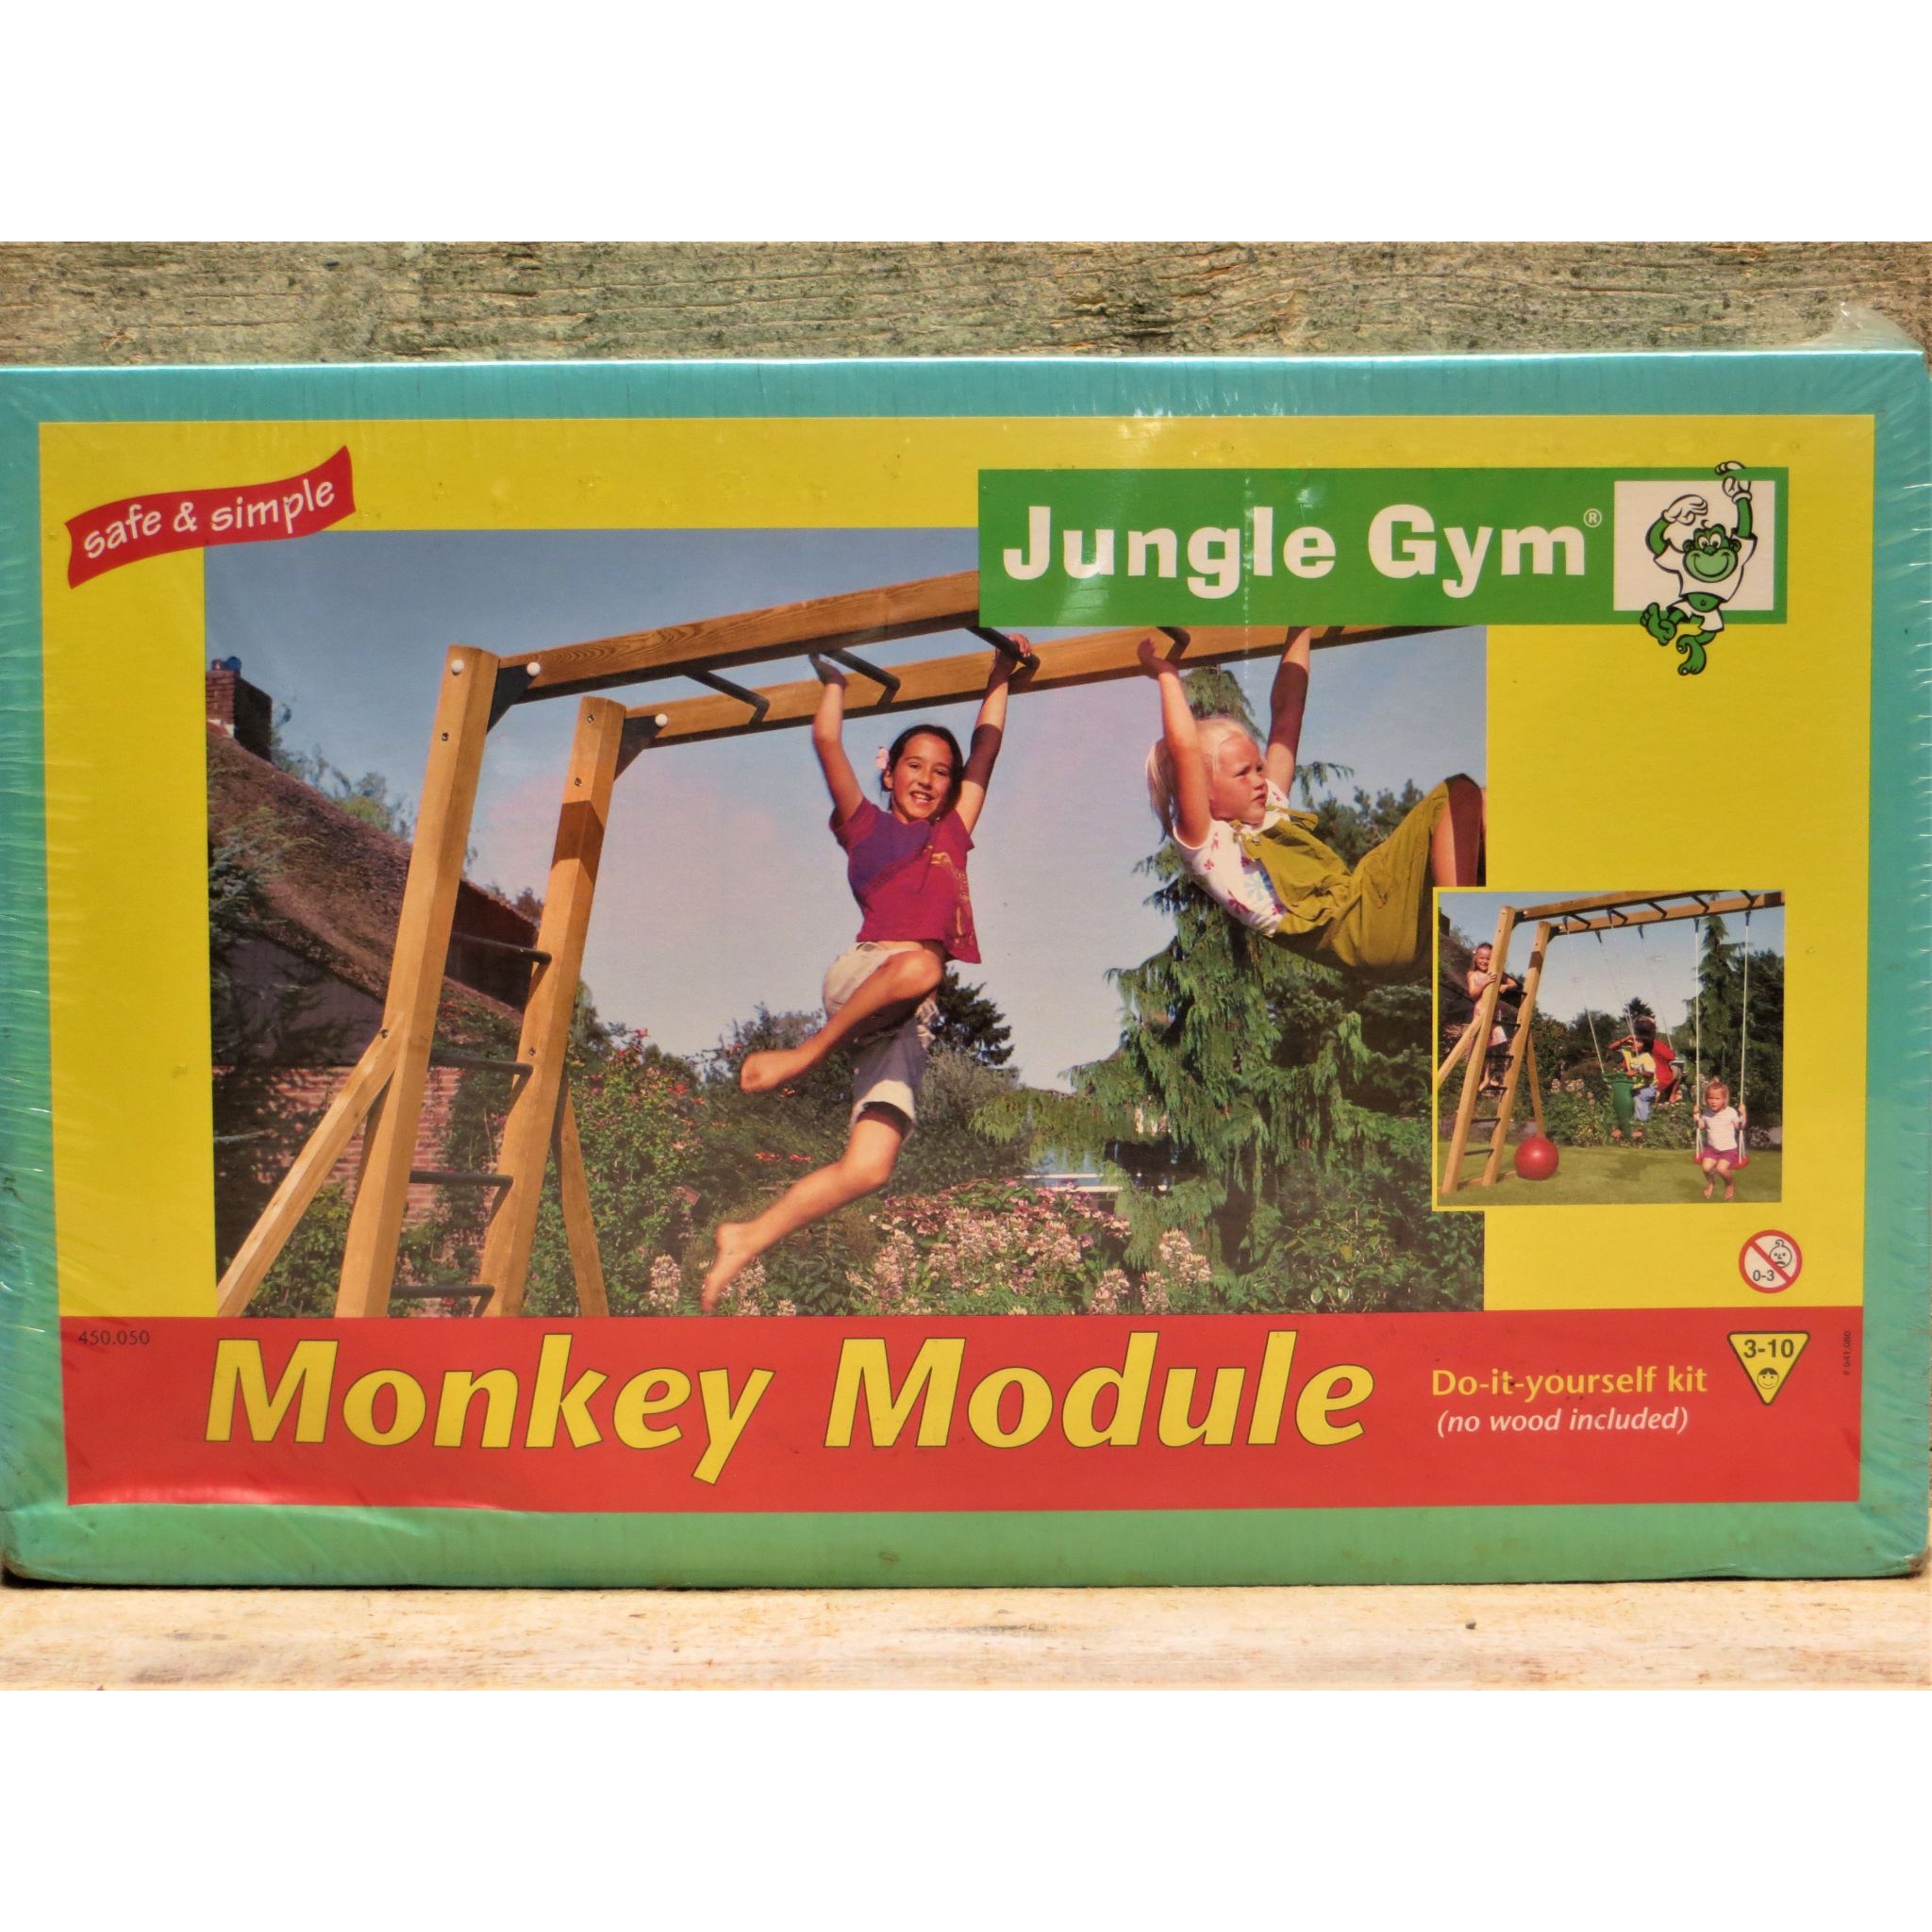 rol Barmhartig in de buurt Jungle gym monkey module 50% korting - Tuincentrum het Oosten